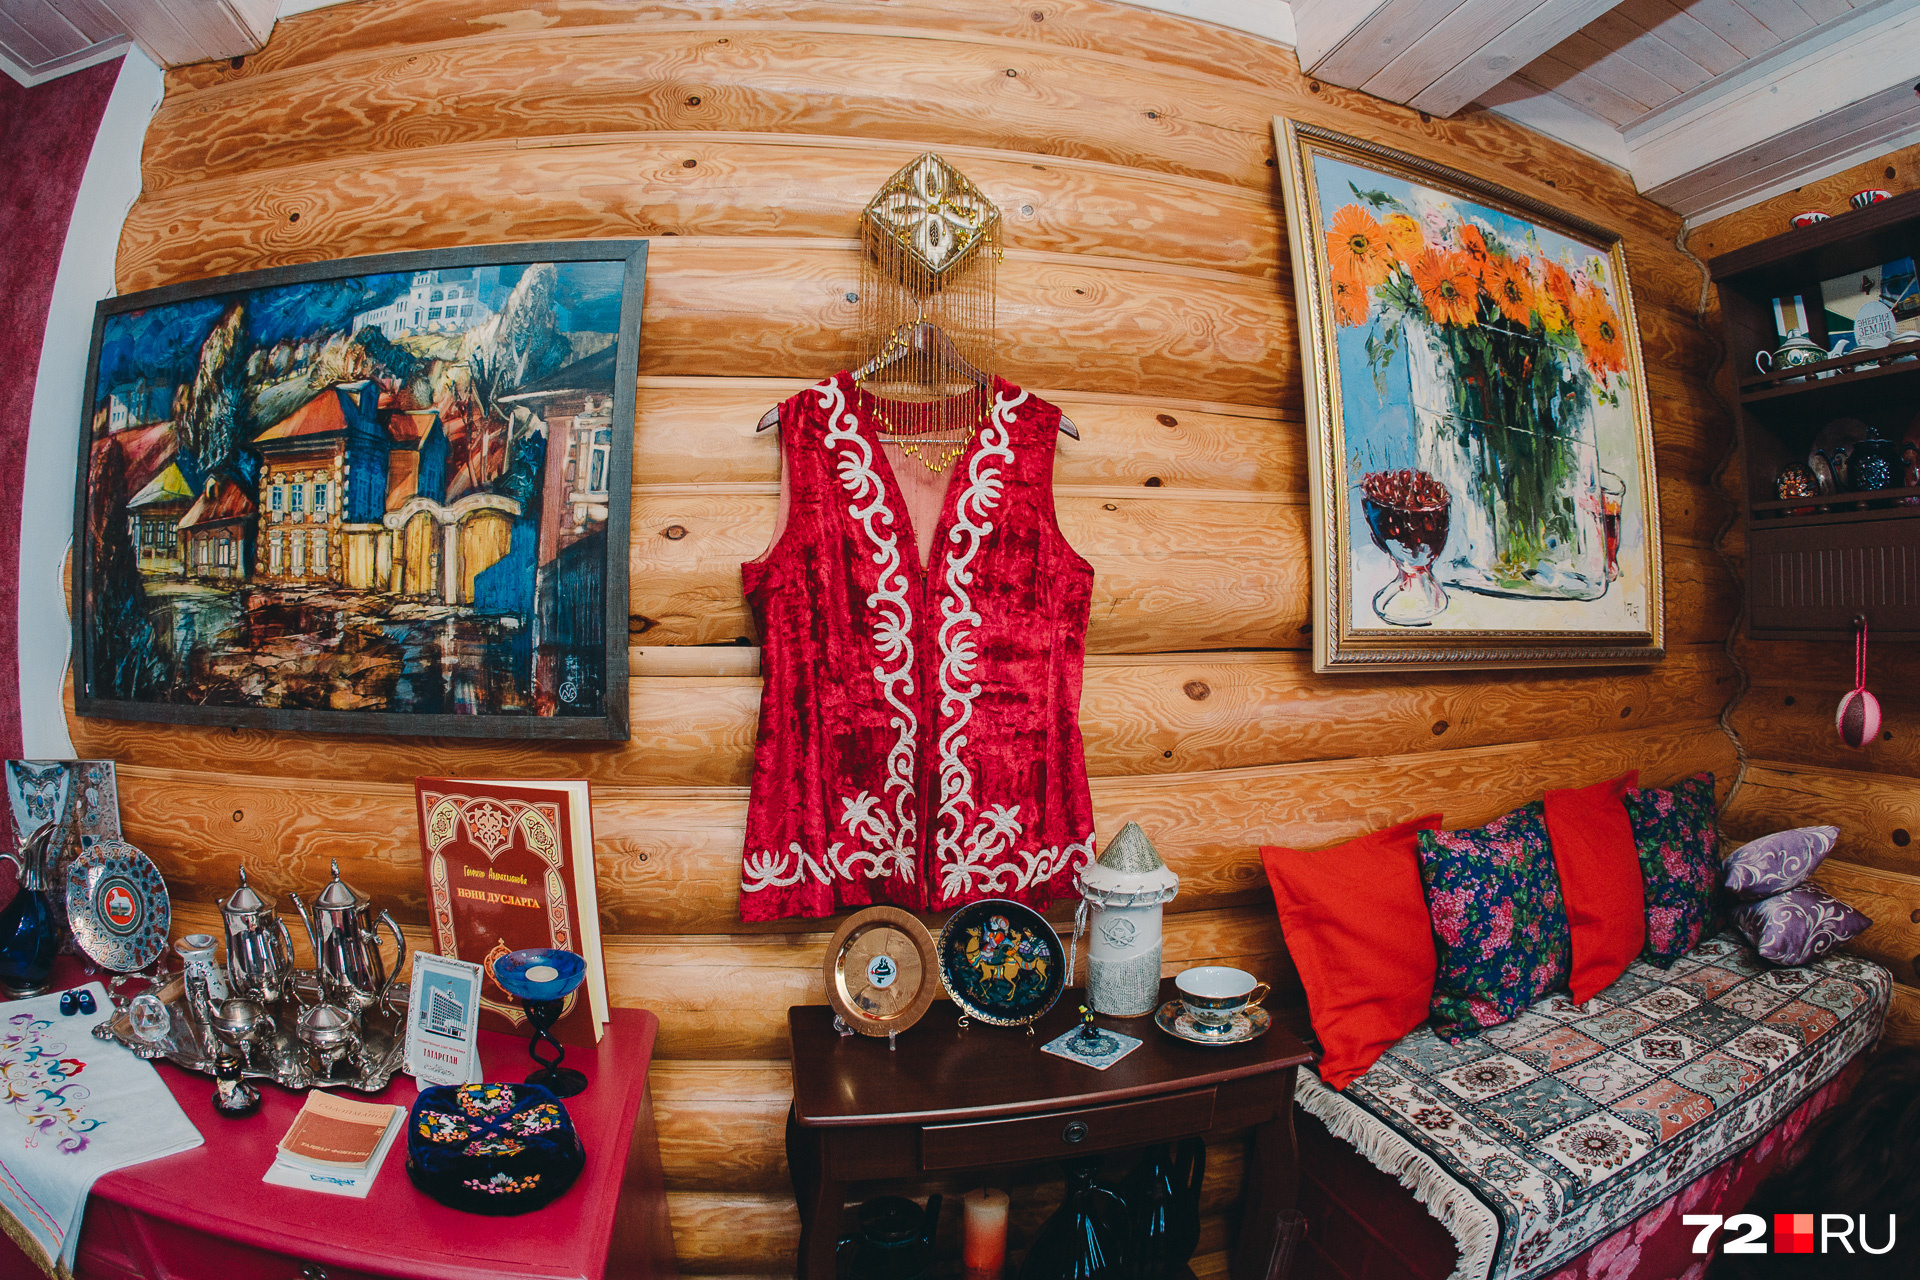 Татарская комната или, как её называют дети, комната Алладина, хранит предметы татарской культуры